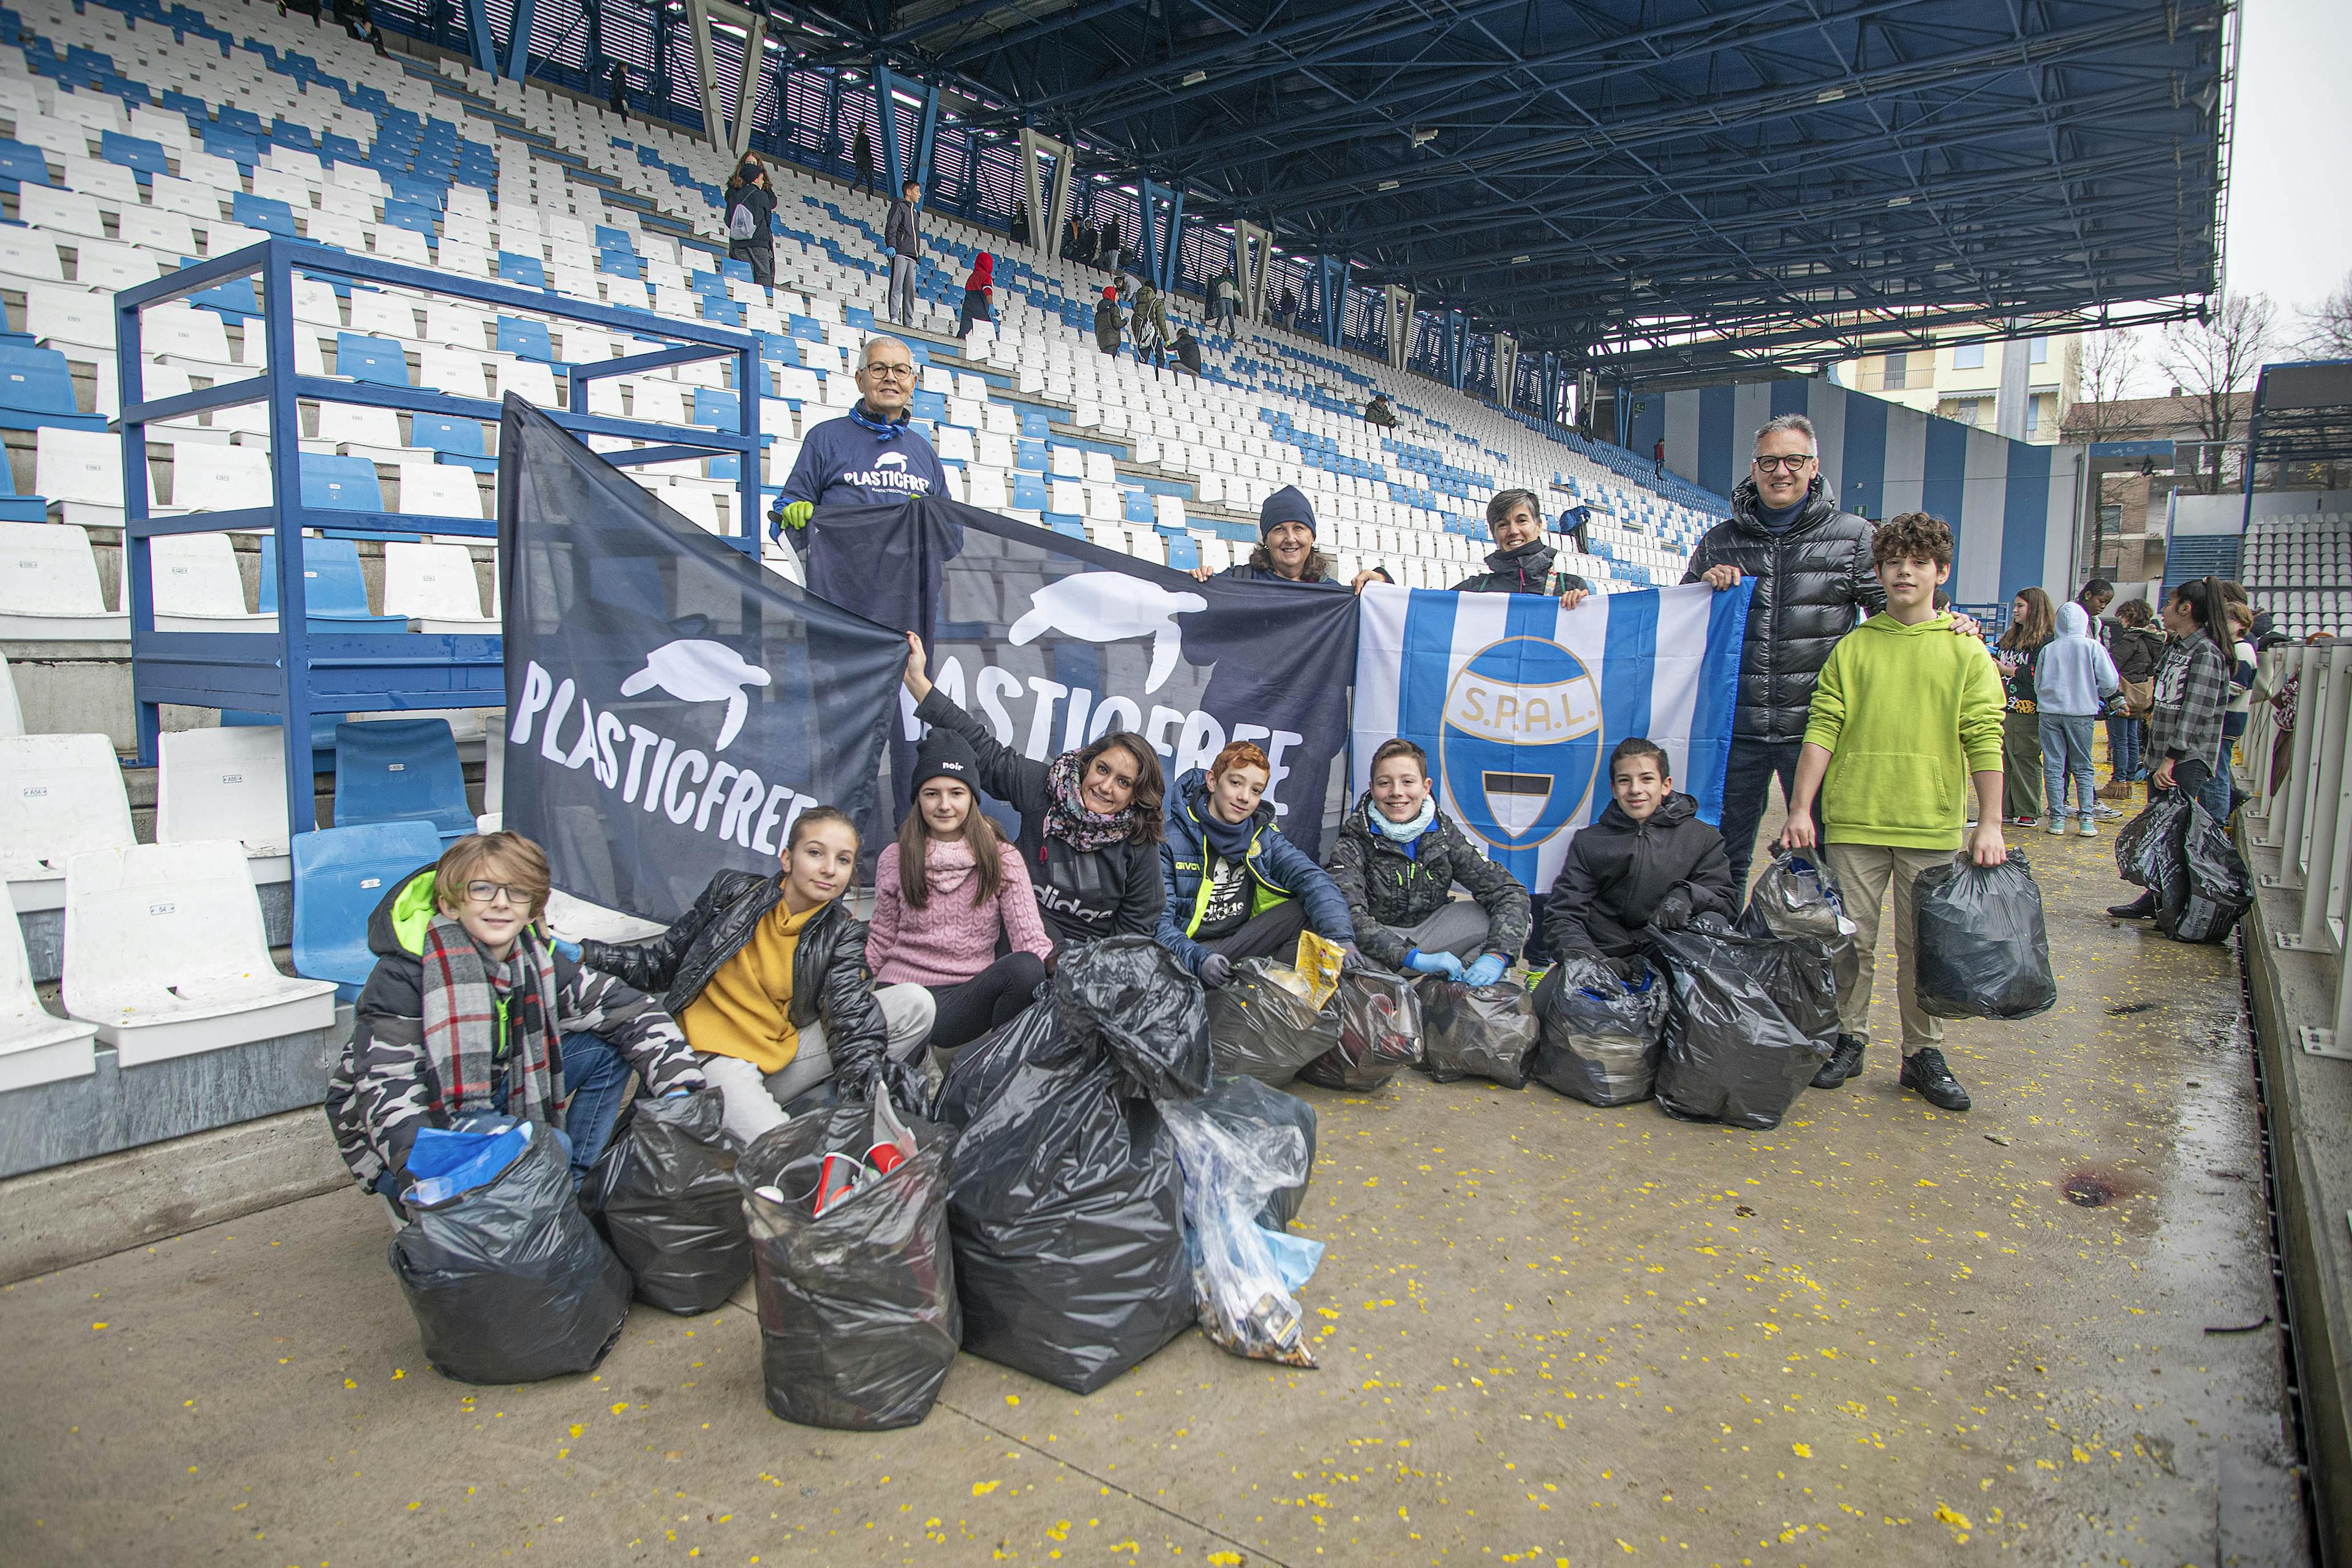 SPAL, scuola media Tasso e Plastic Free insieme al "Mazza" per l'ambiente